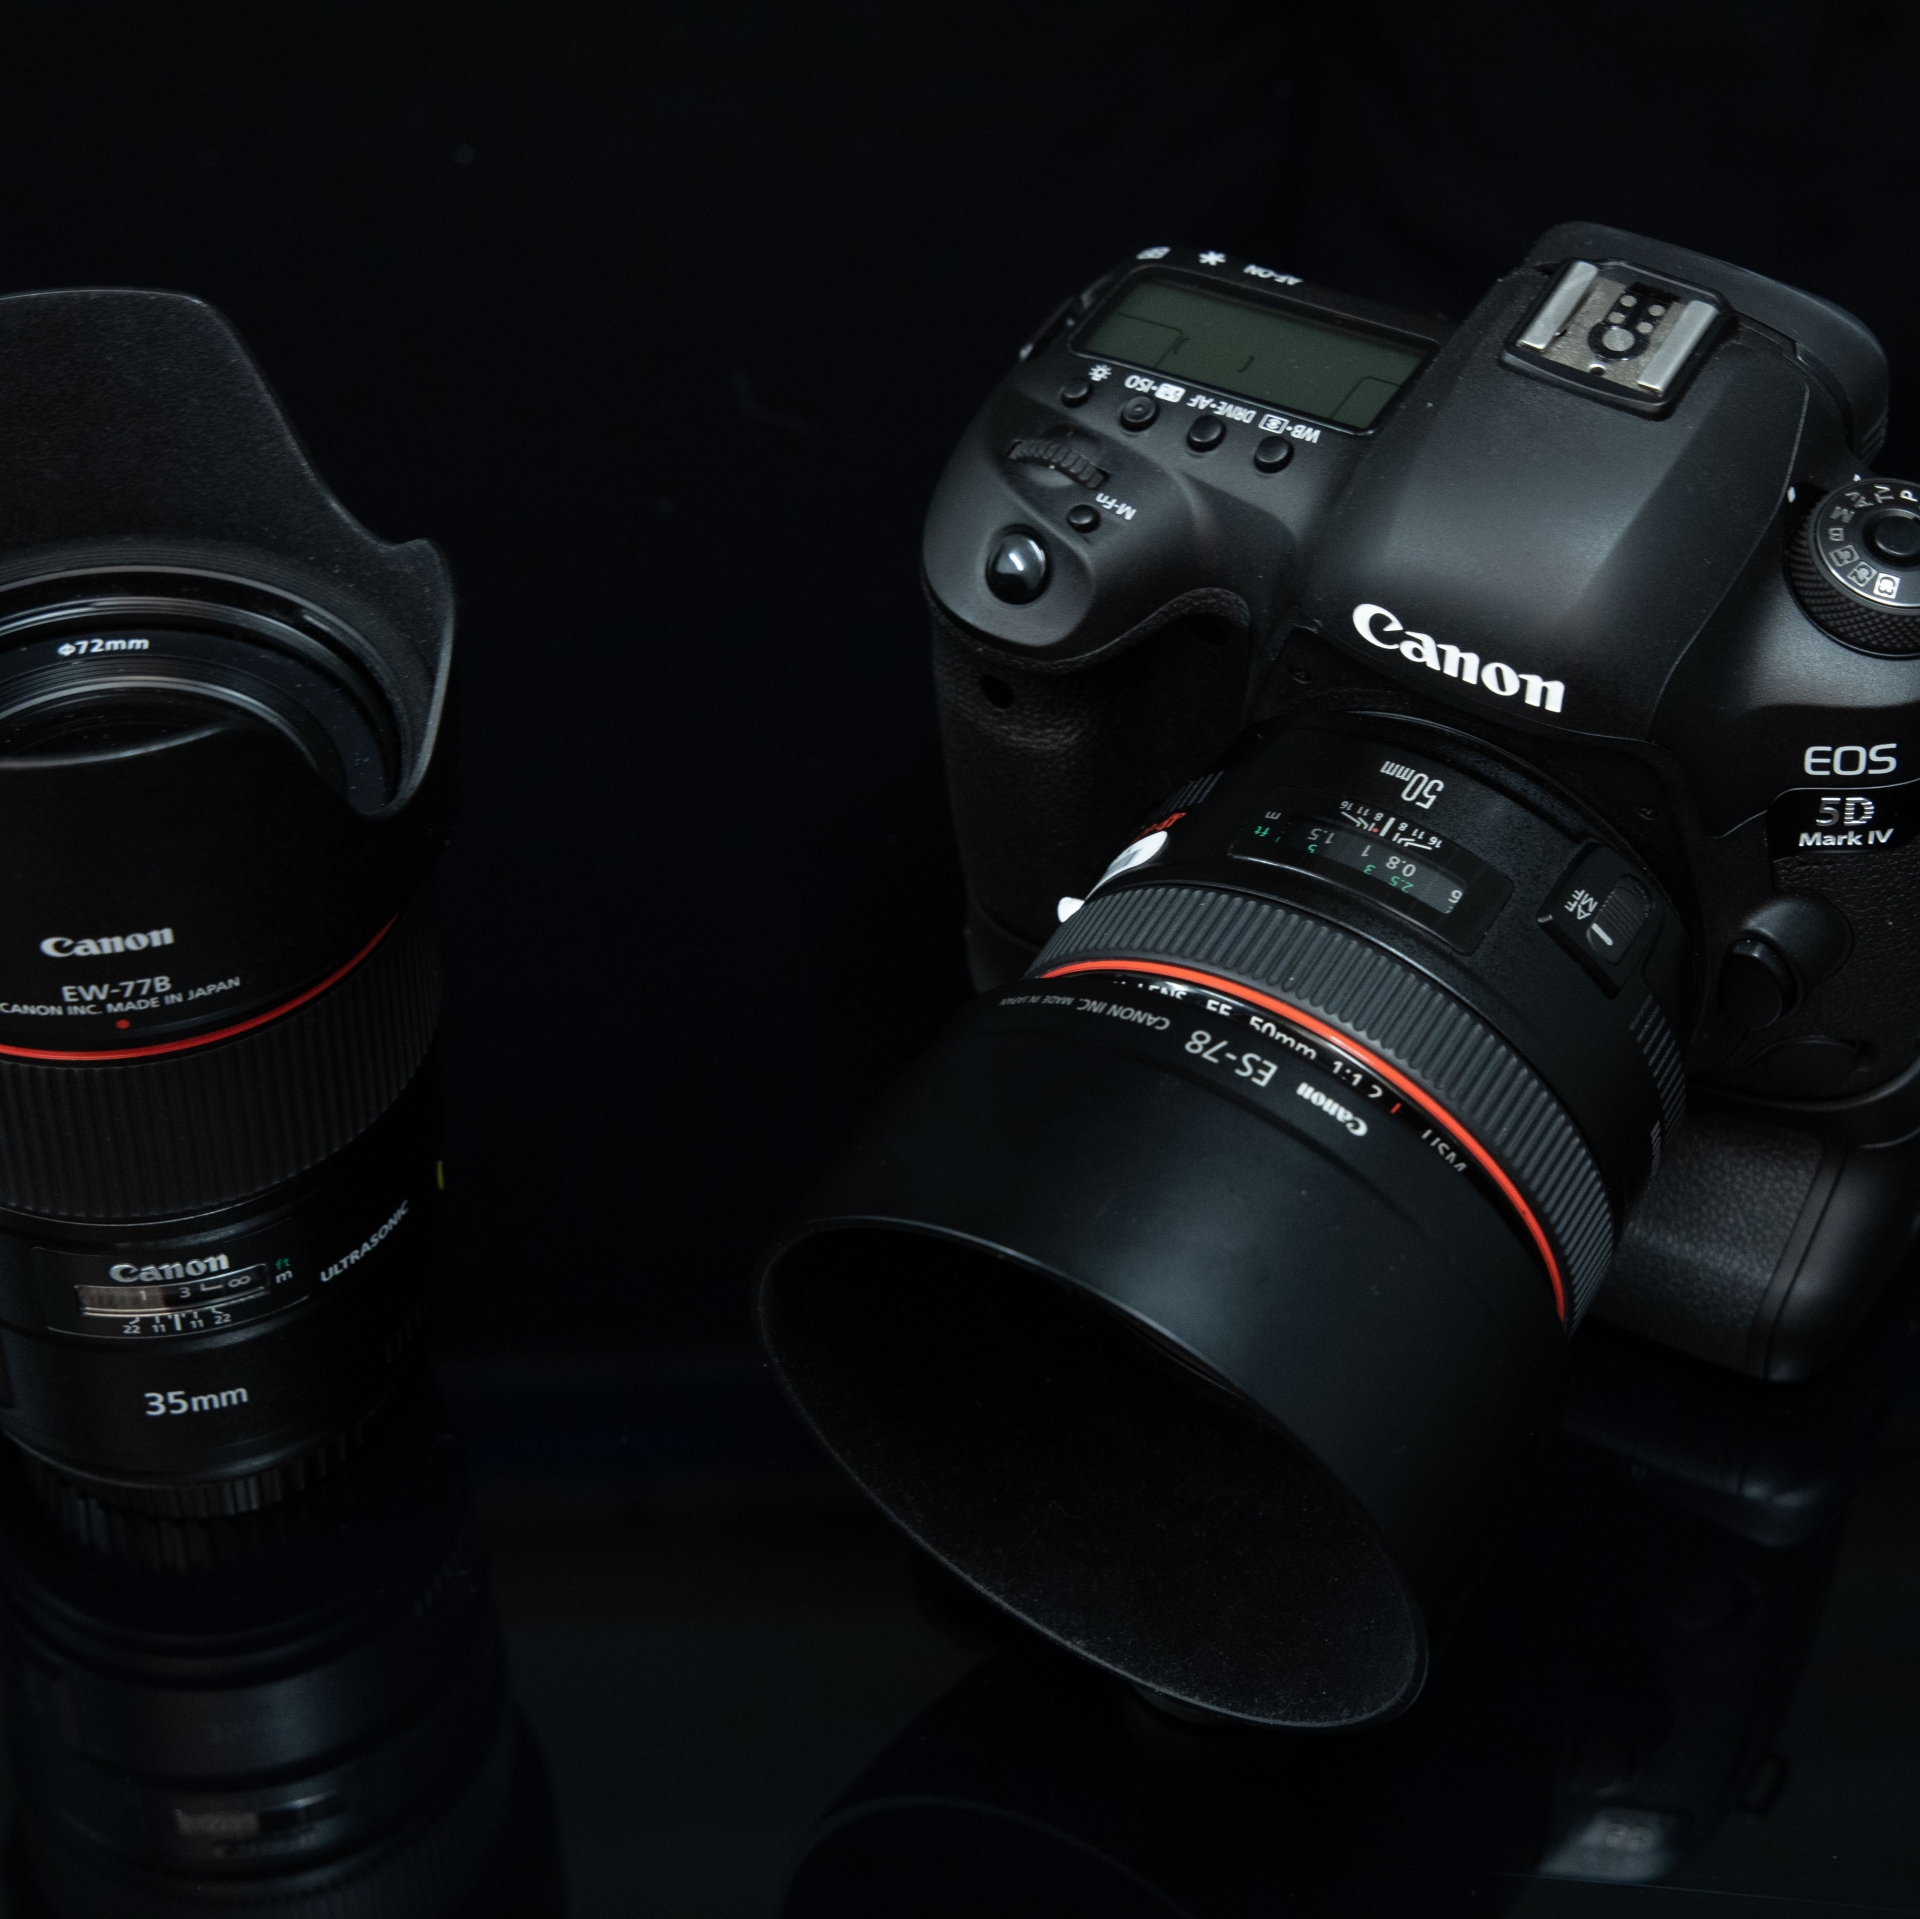 Ein 35mm-Objektiv an einer APS-C-Kamera entspricht einem 50mm-Objektiv an einer Vollformatkamera wie der EOS 5D Mark IV